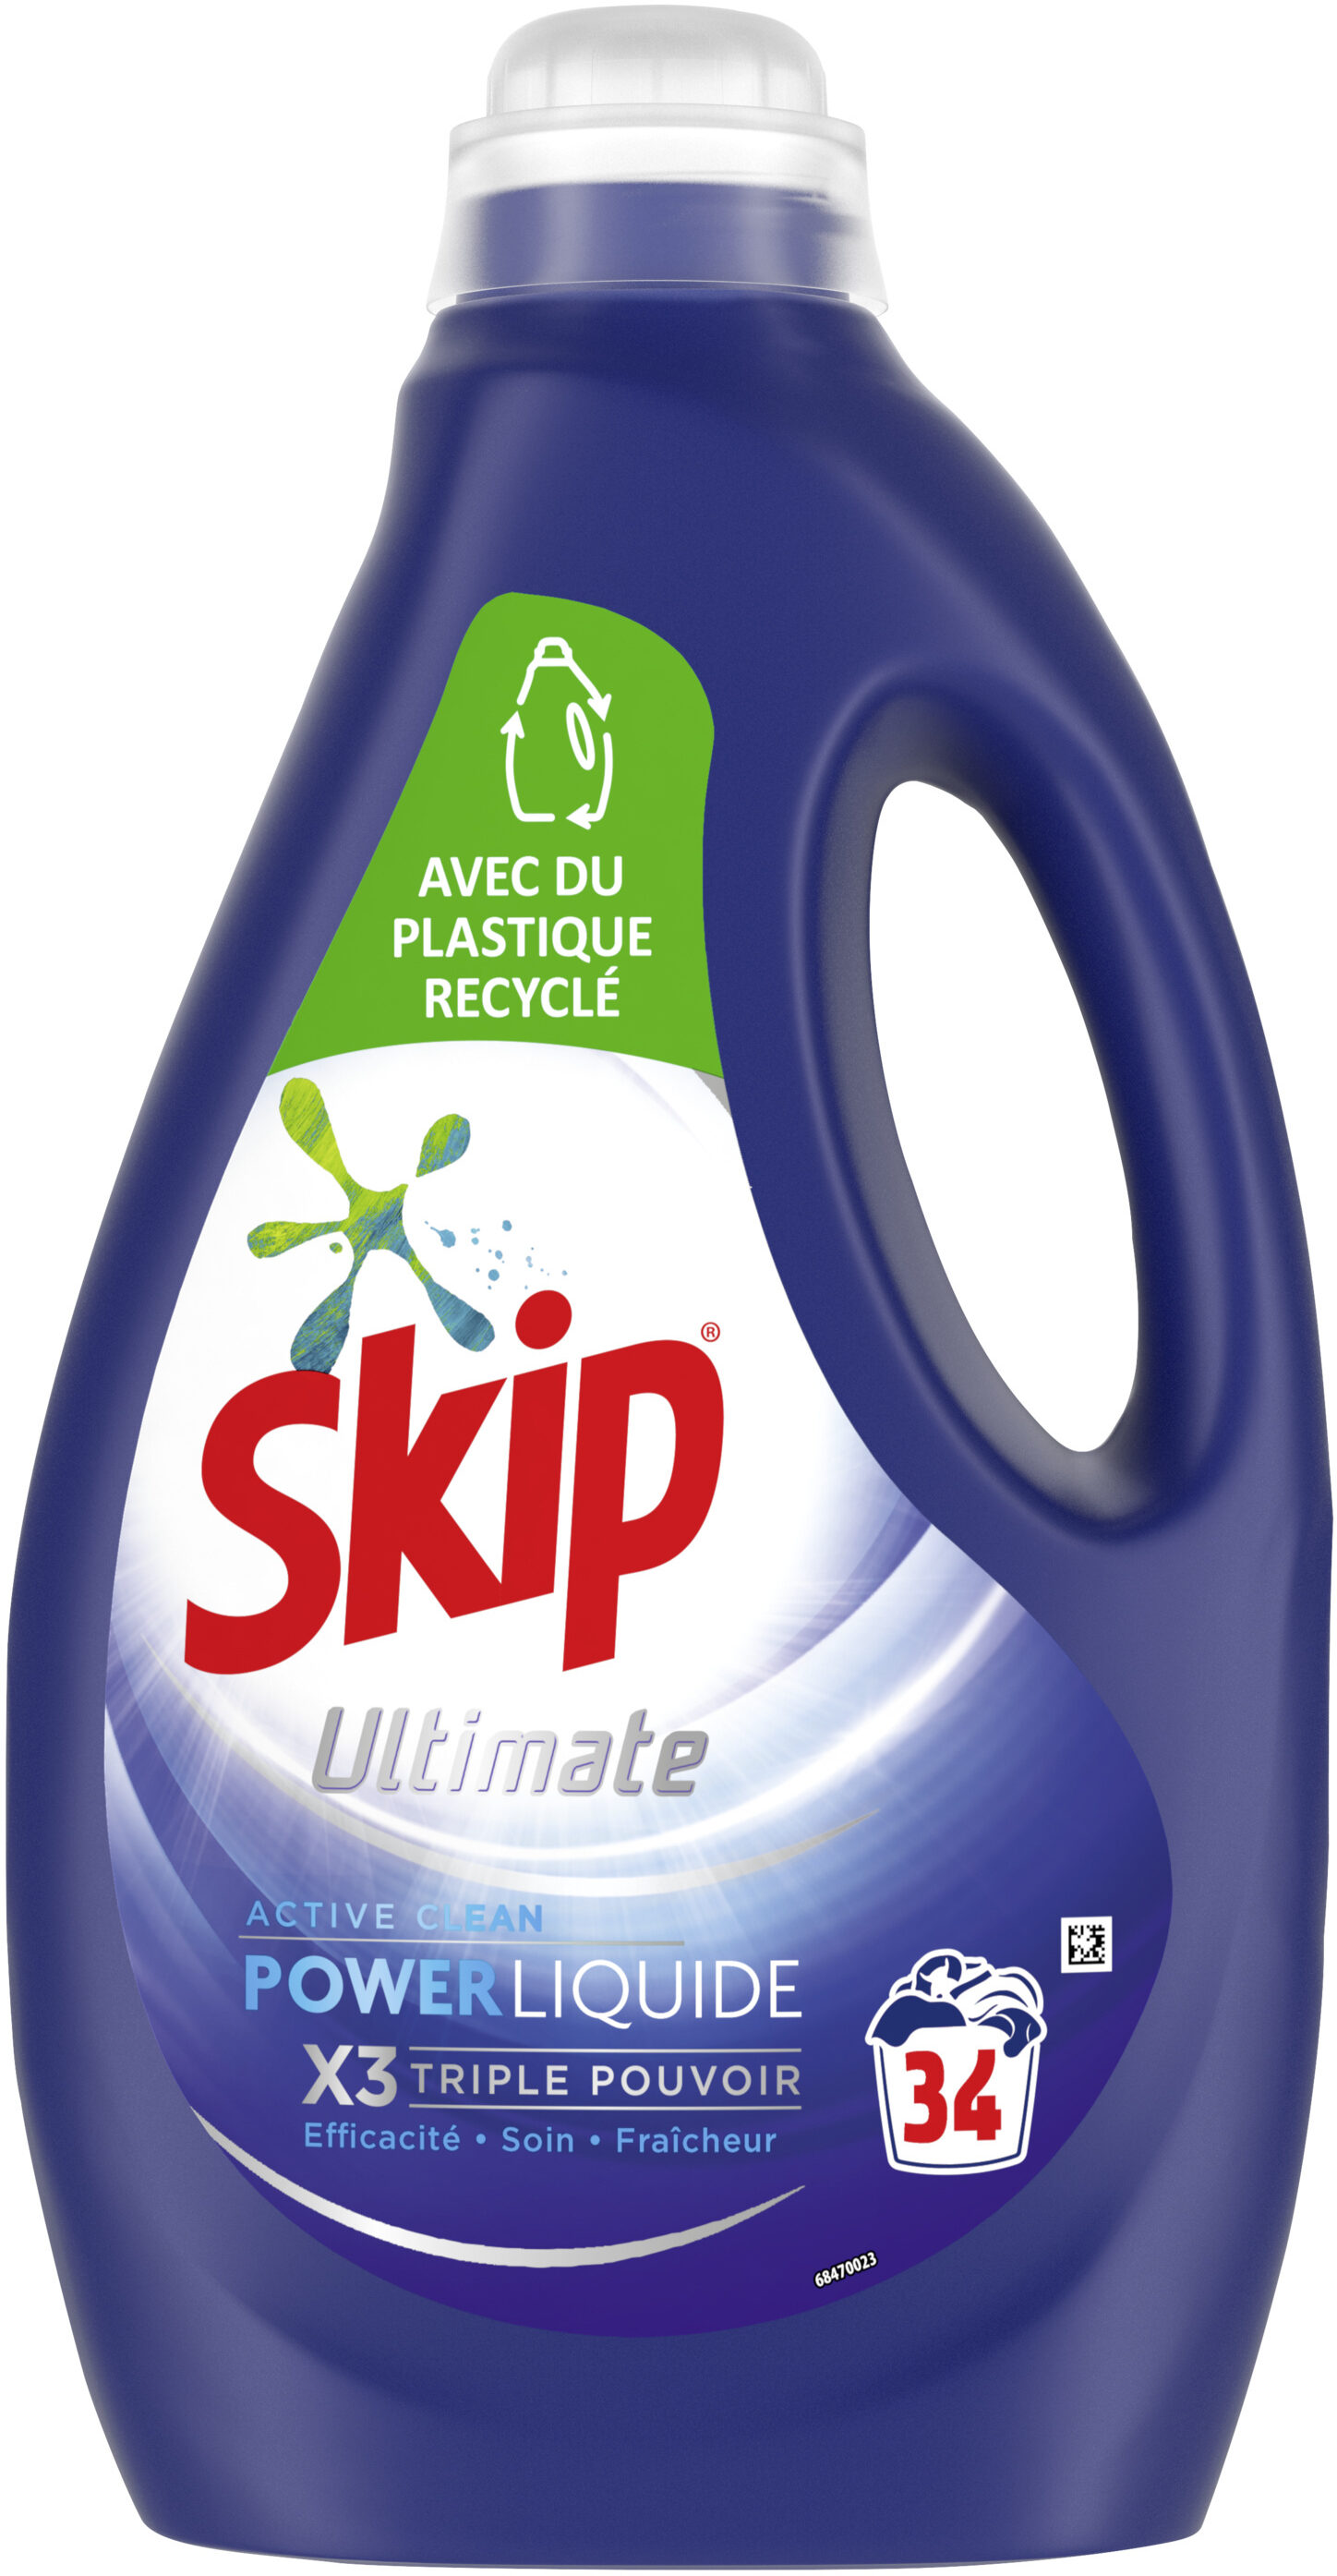 SKIP Lessive Liquide Ultimate Active Clean 1,7l - 34 Lavages - 1700 ml